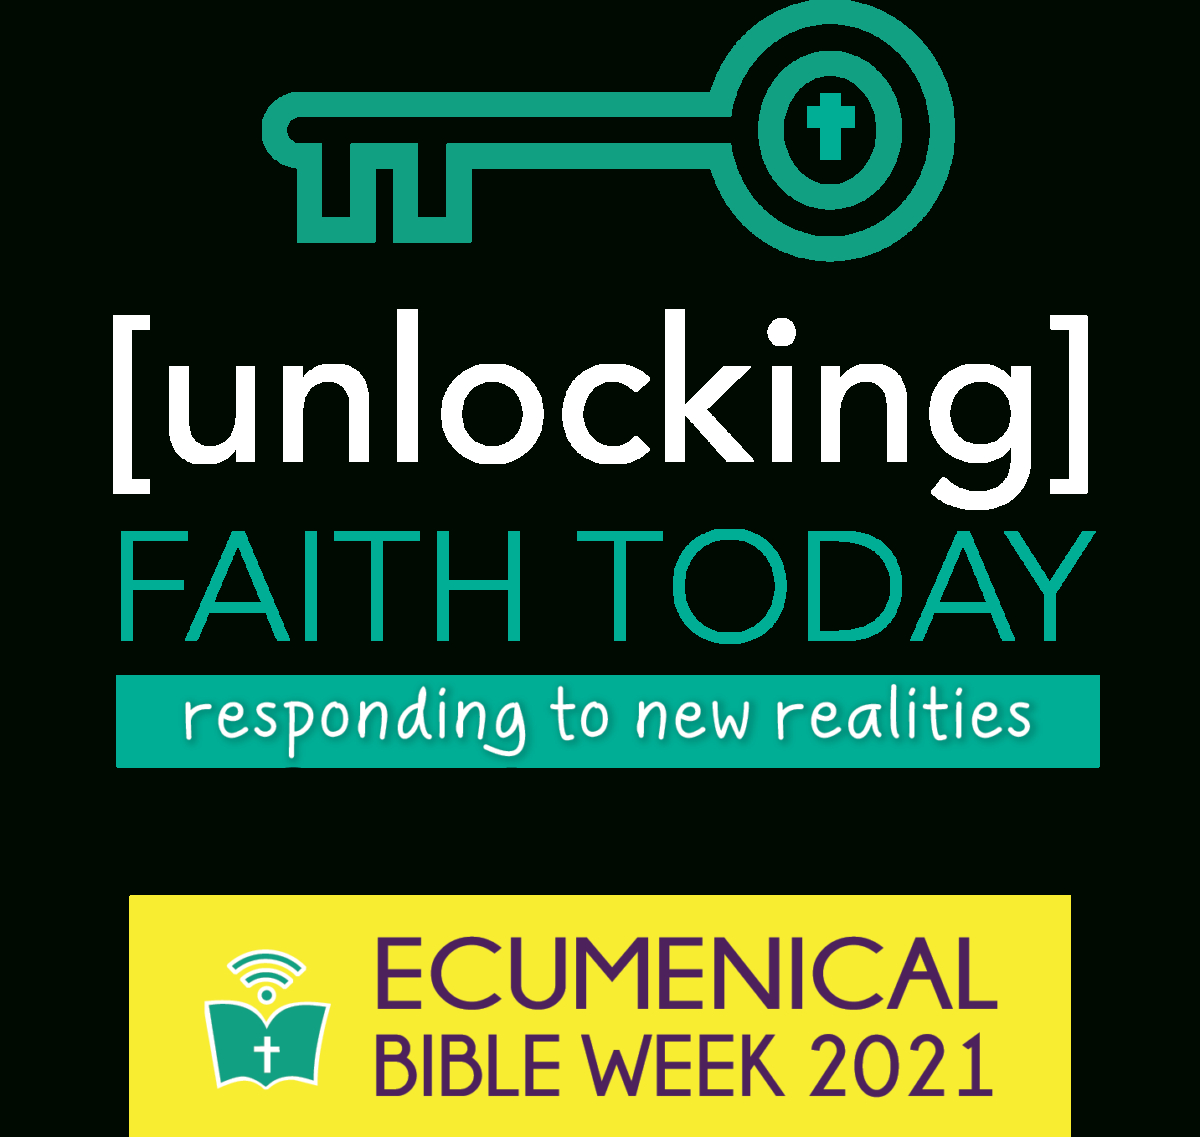 Ecumenical Bible Week 2021 | May 23Rd - May 30Th 2021